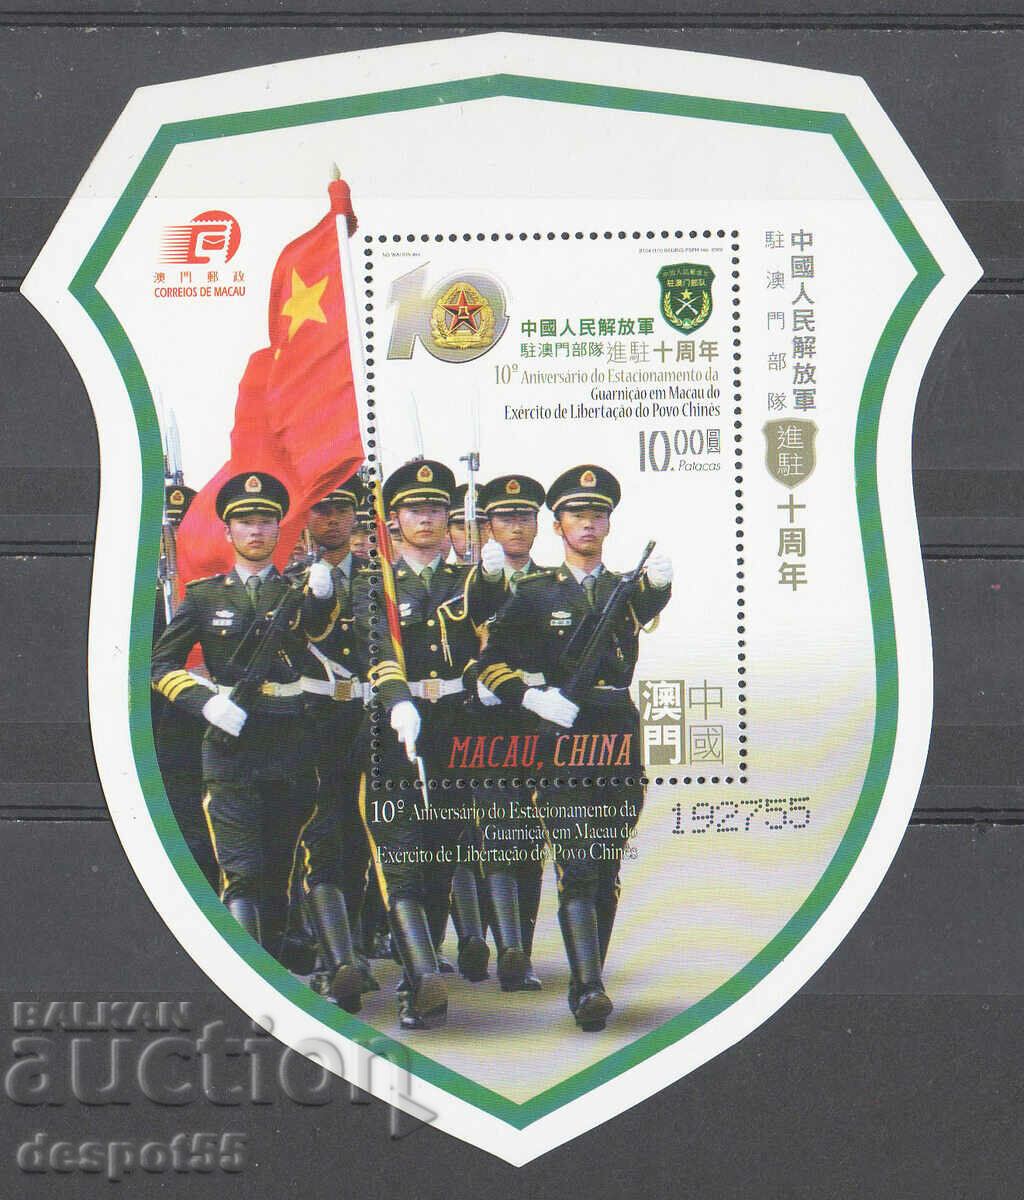 2009. Μακάο. Η φρουρά του Λαϊκού Απελευθερωτικού Στρατού.